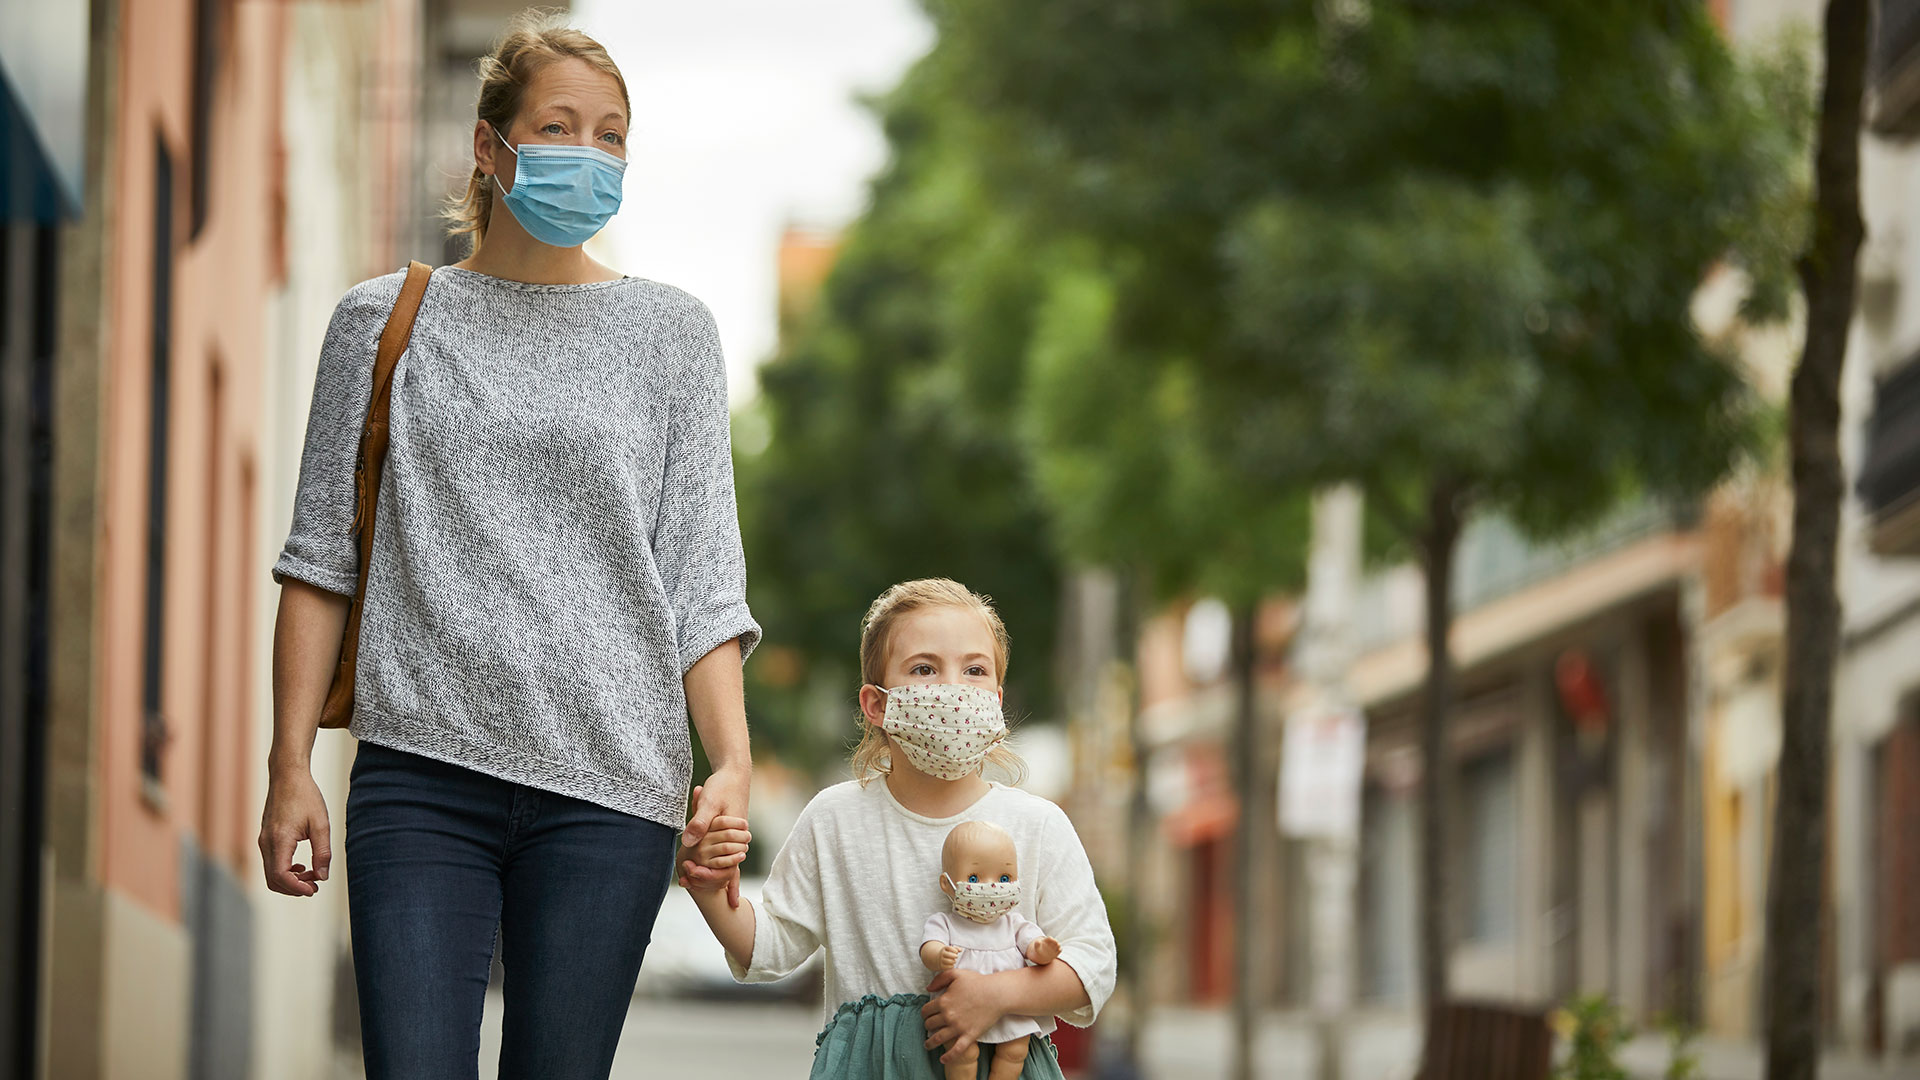 El apoyo de los padres resulta fundamental para que los niños puedan entender las implicancias de la actual pandemia (Getty Images)